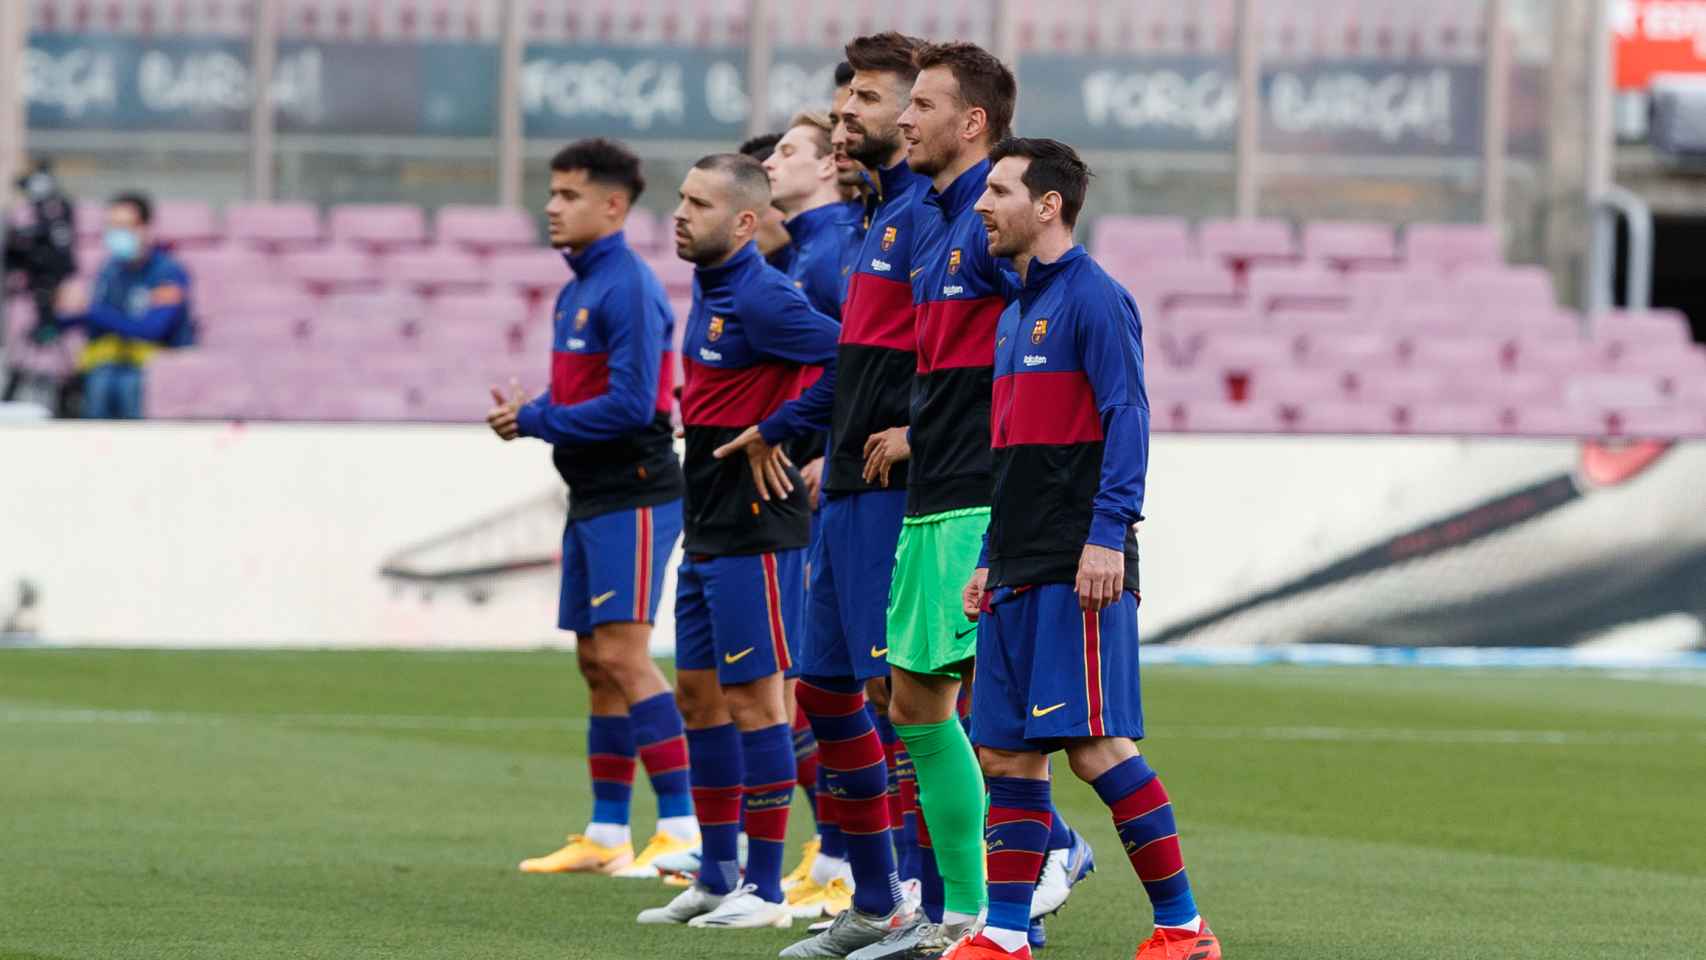 Los jugadores del FC Barcelona posando antes de un partido de La Liga